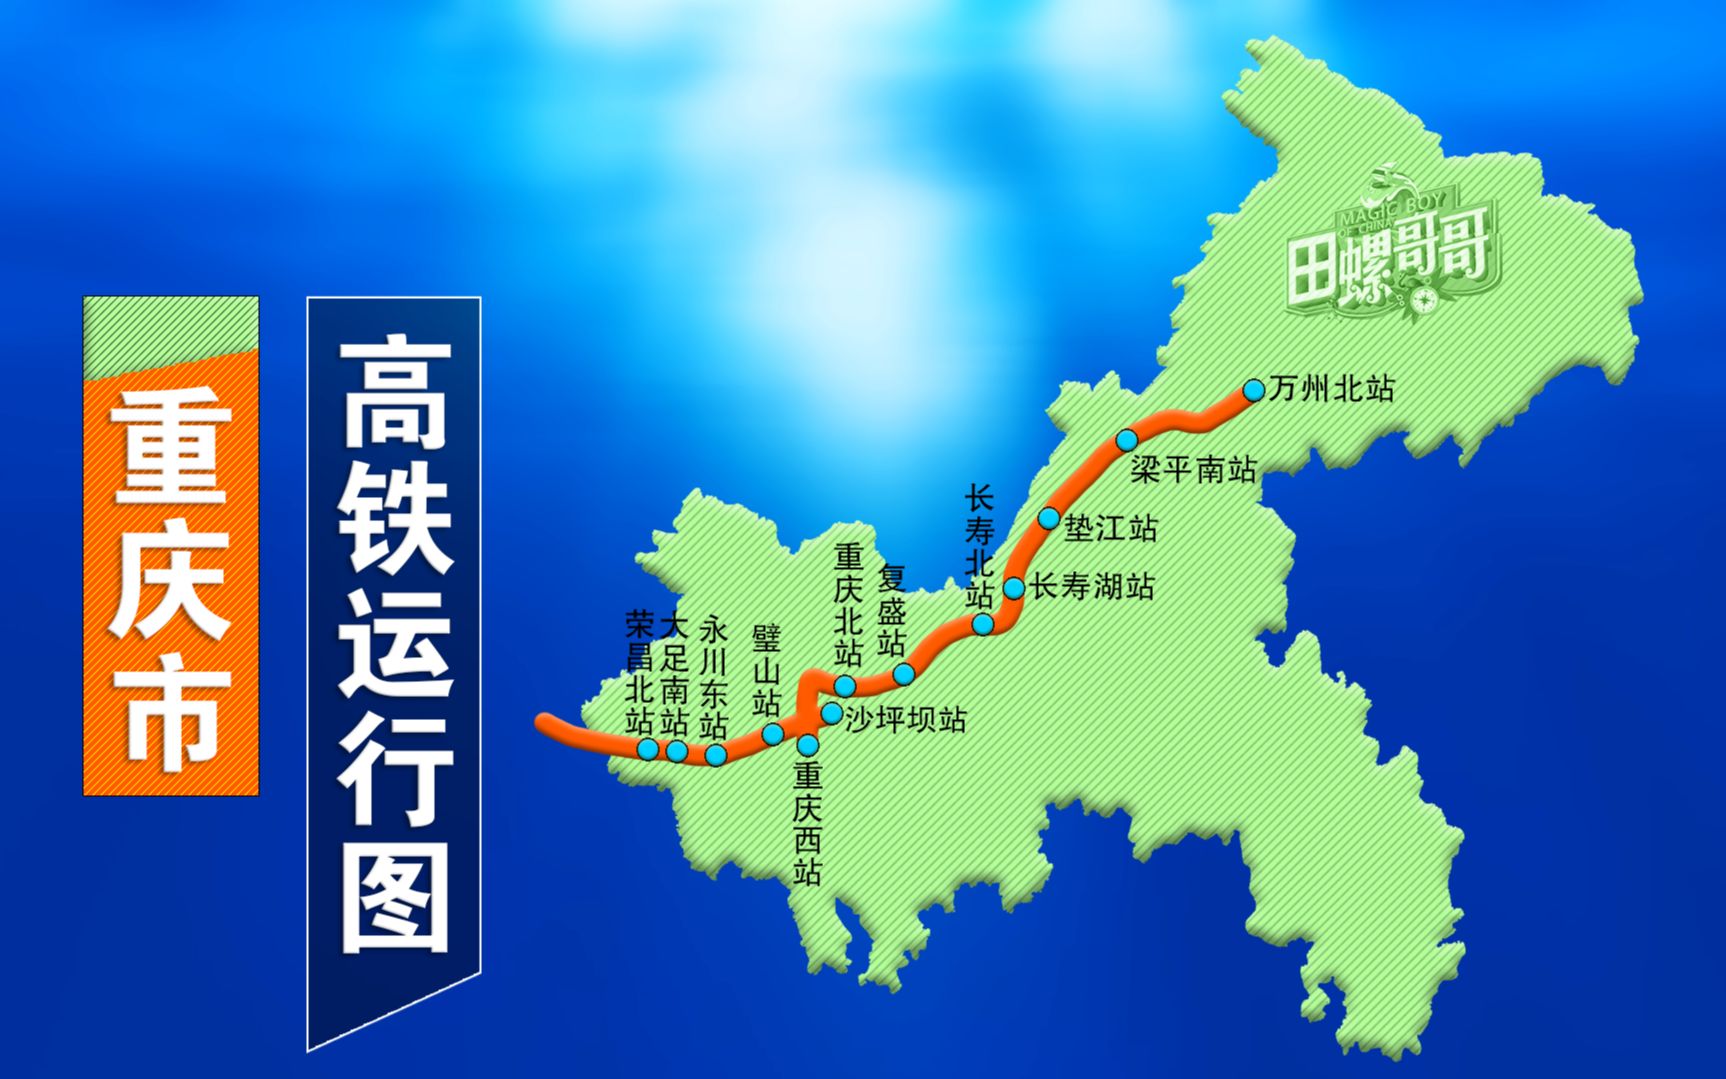 动画演示重庆高铁地图,一共只有两条,大部分地区还是空白!